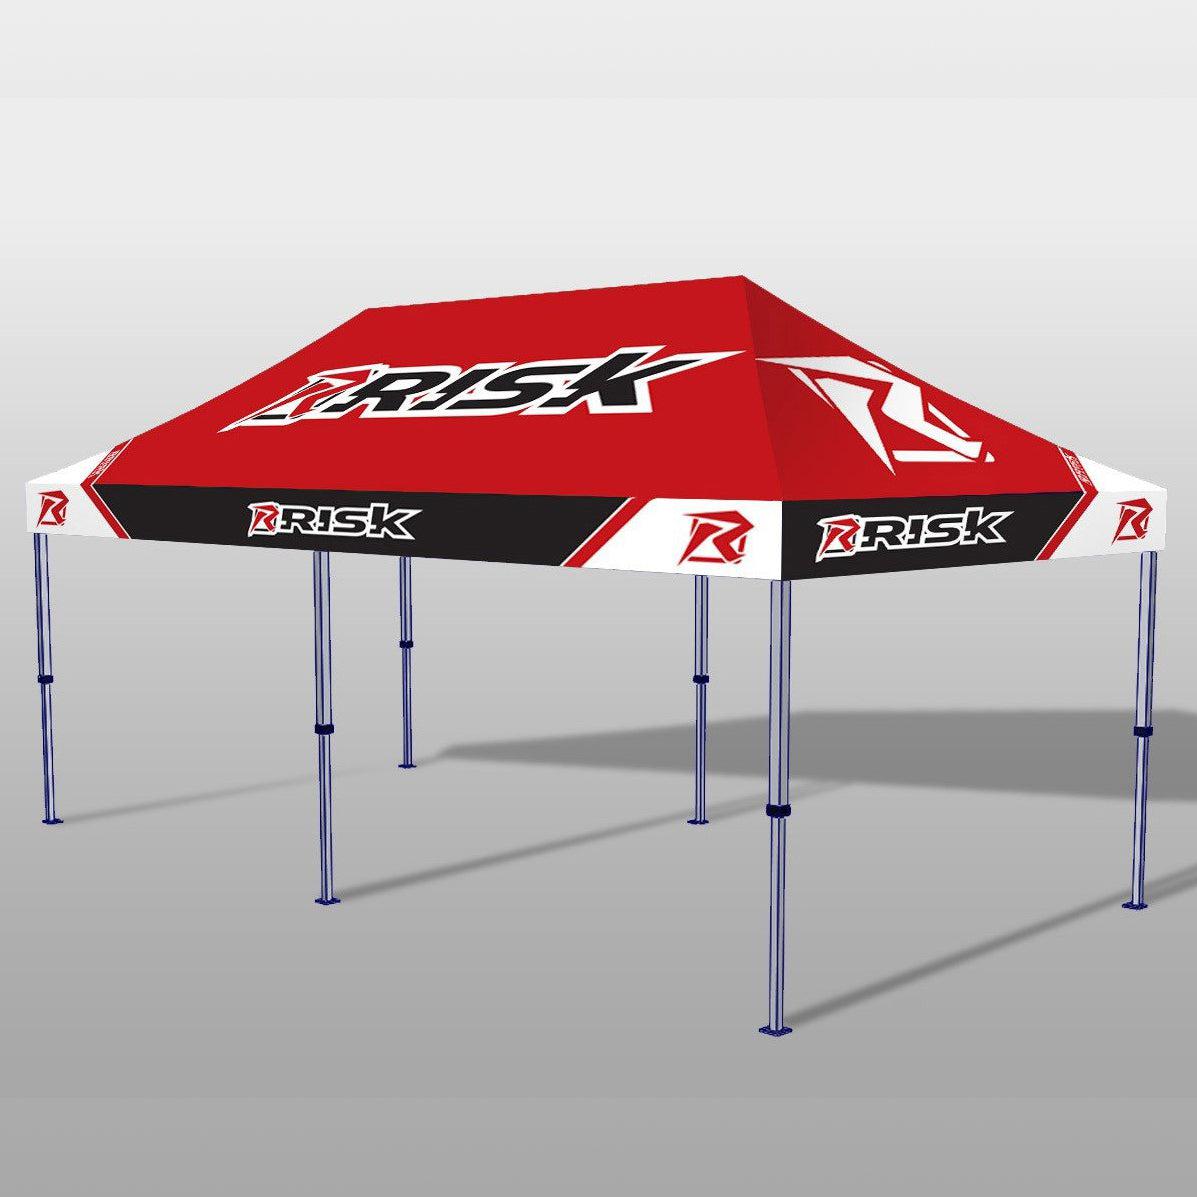 10x10 Race Canopy - Premium Pit Tent